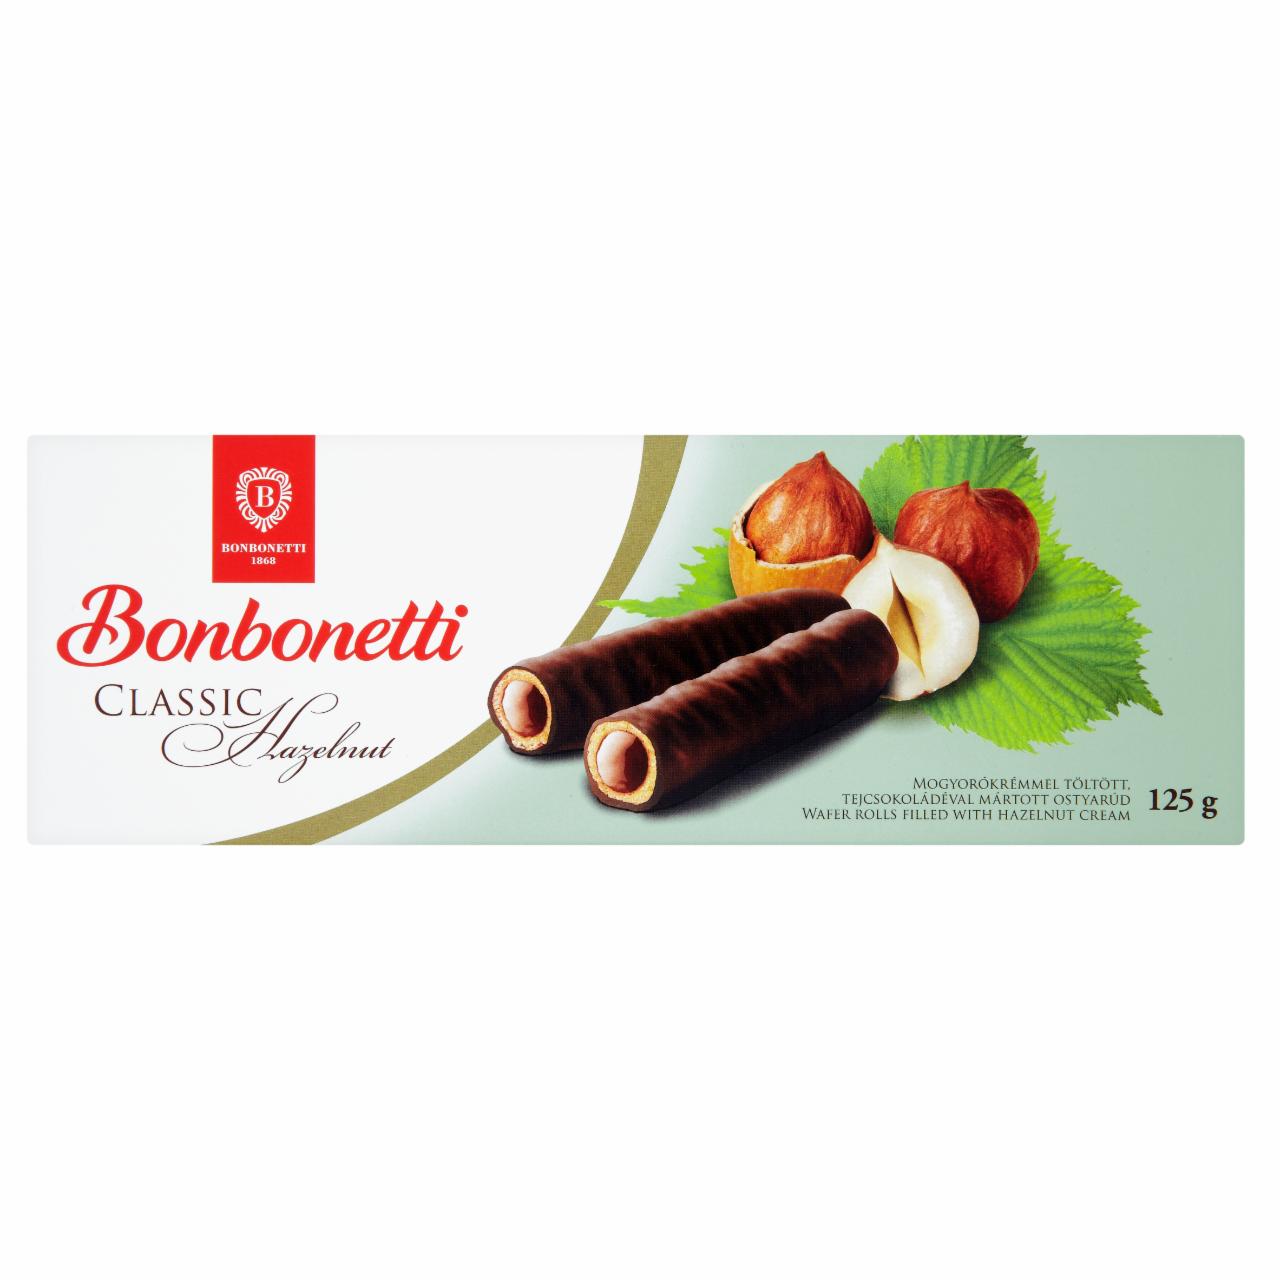 Képek - Bonbonetti Classic mogyorókrémmel töltött tejcsokoládéval mártott ostyarúd 125 g